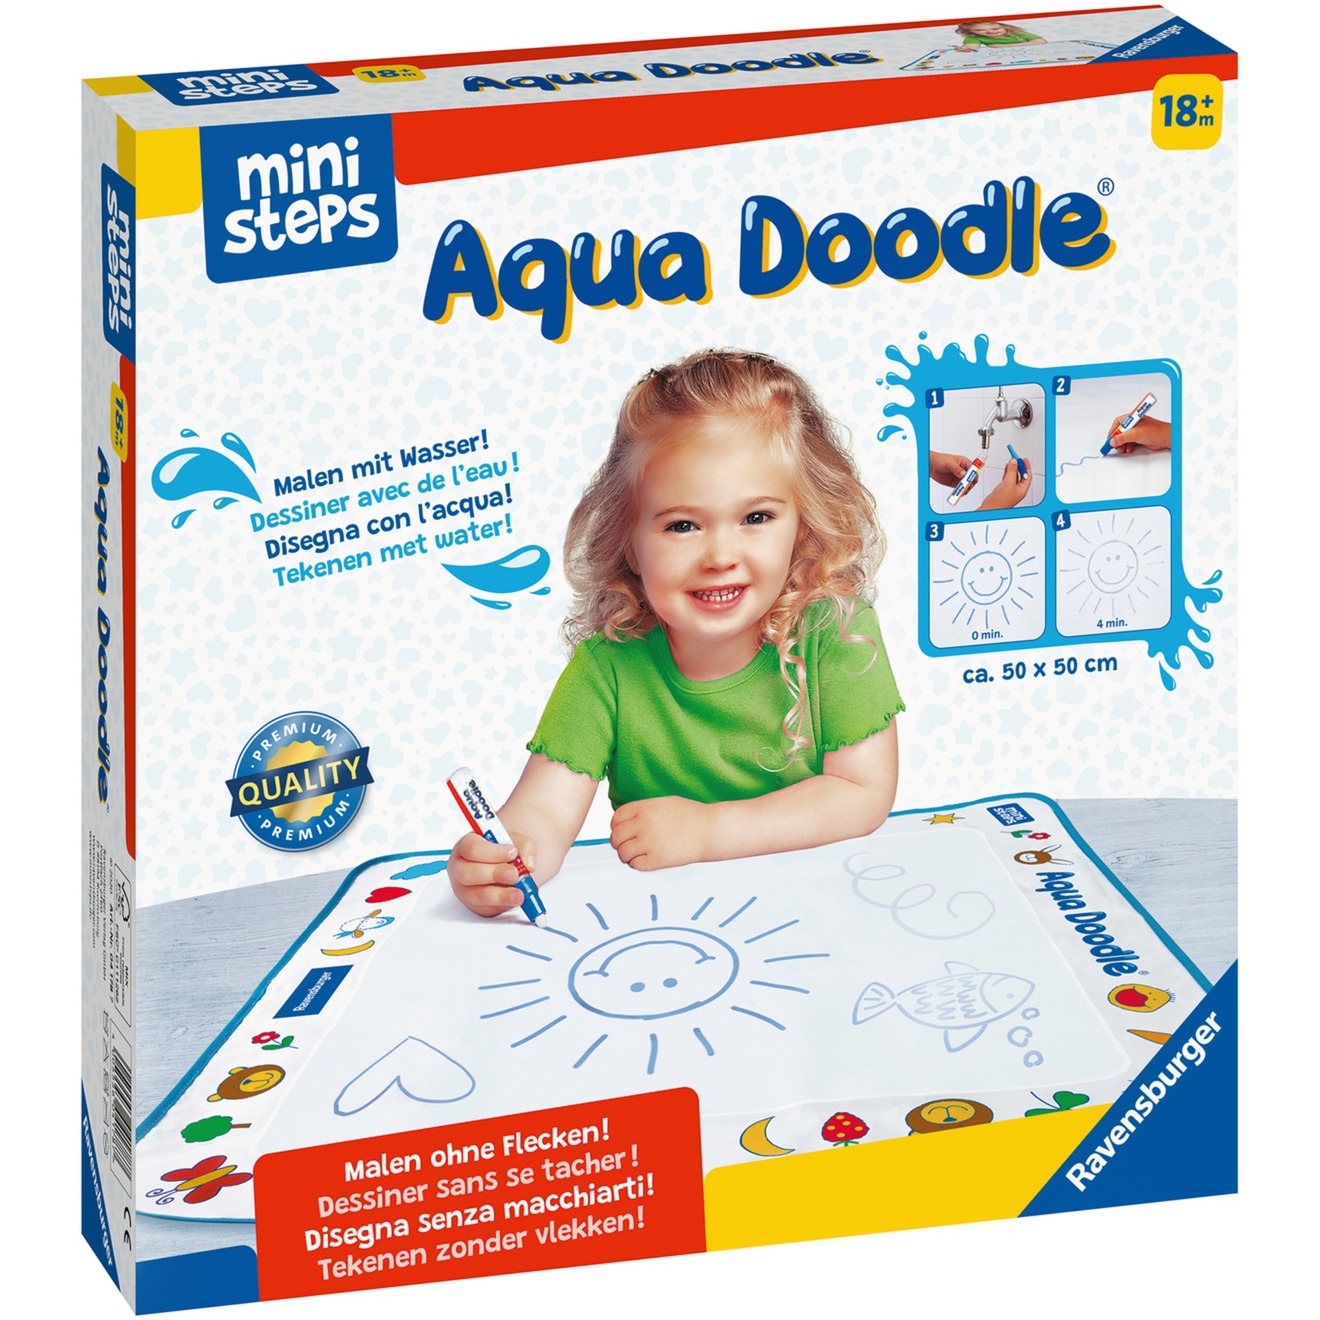 ministeps: Aqua Doodle, Malen